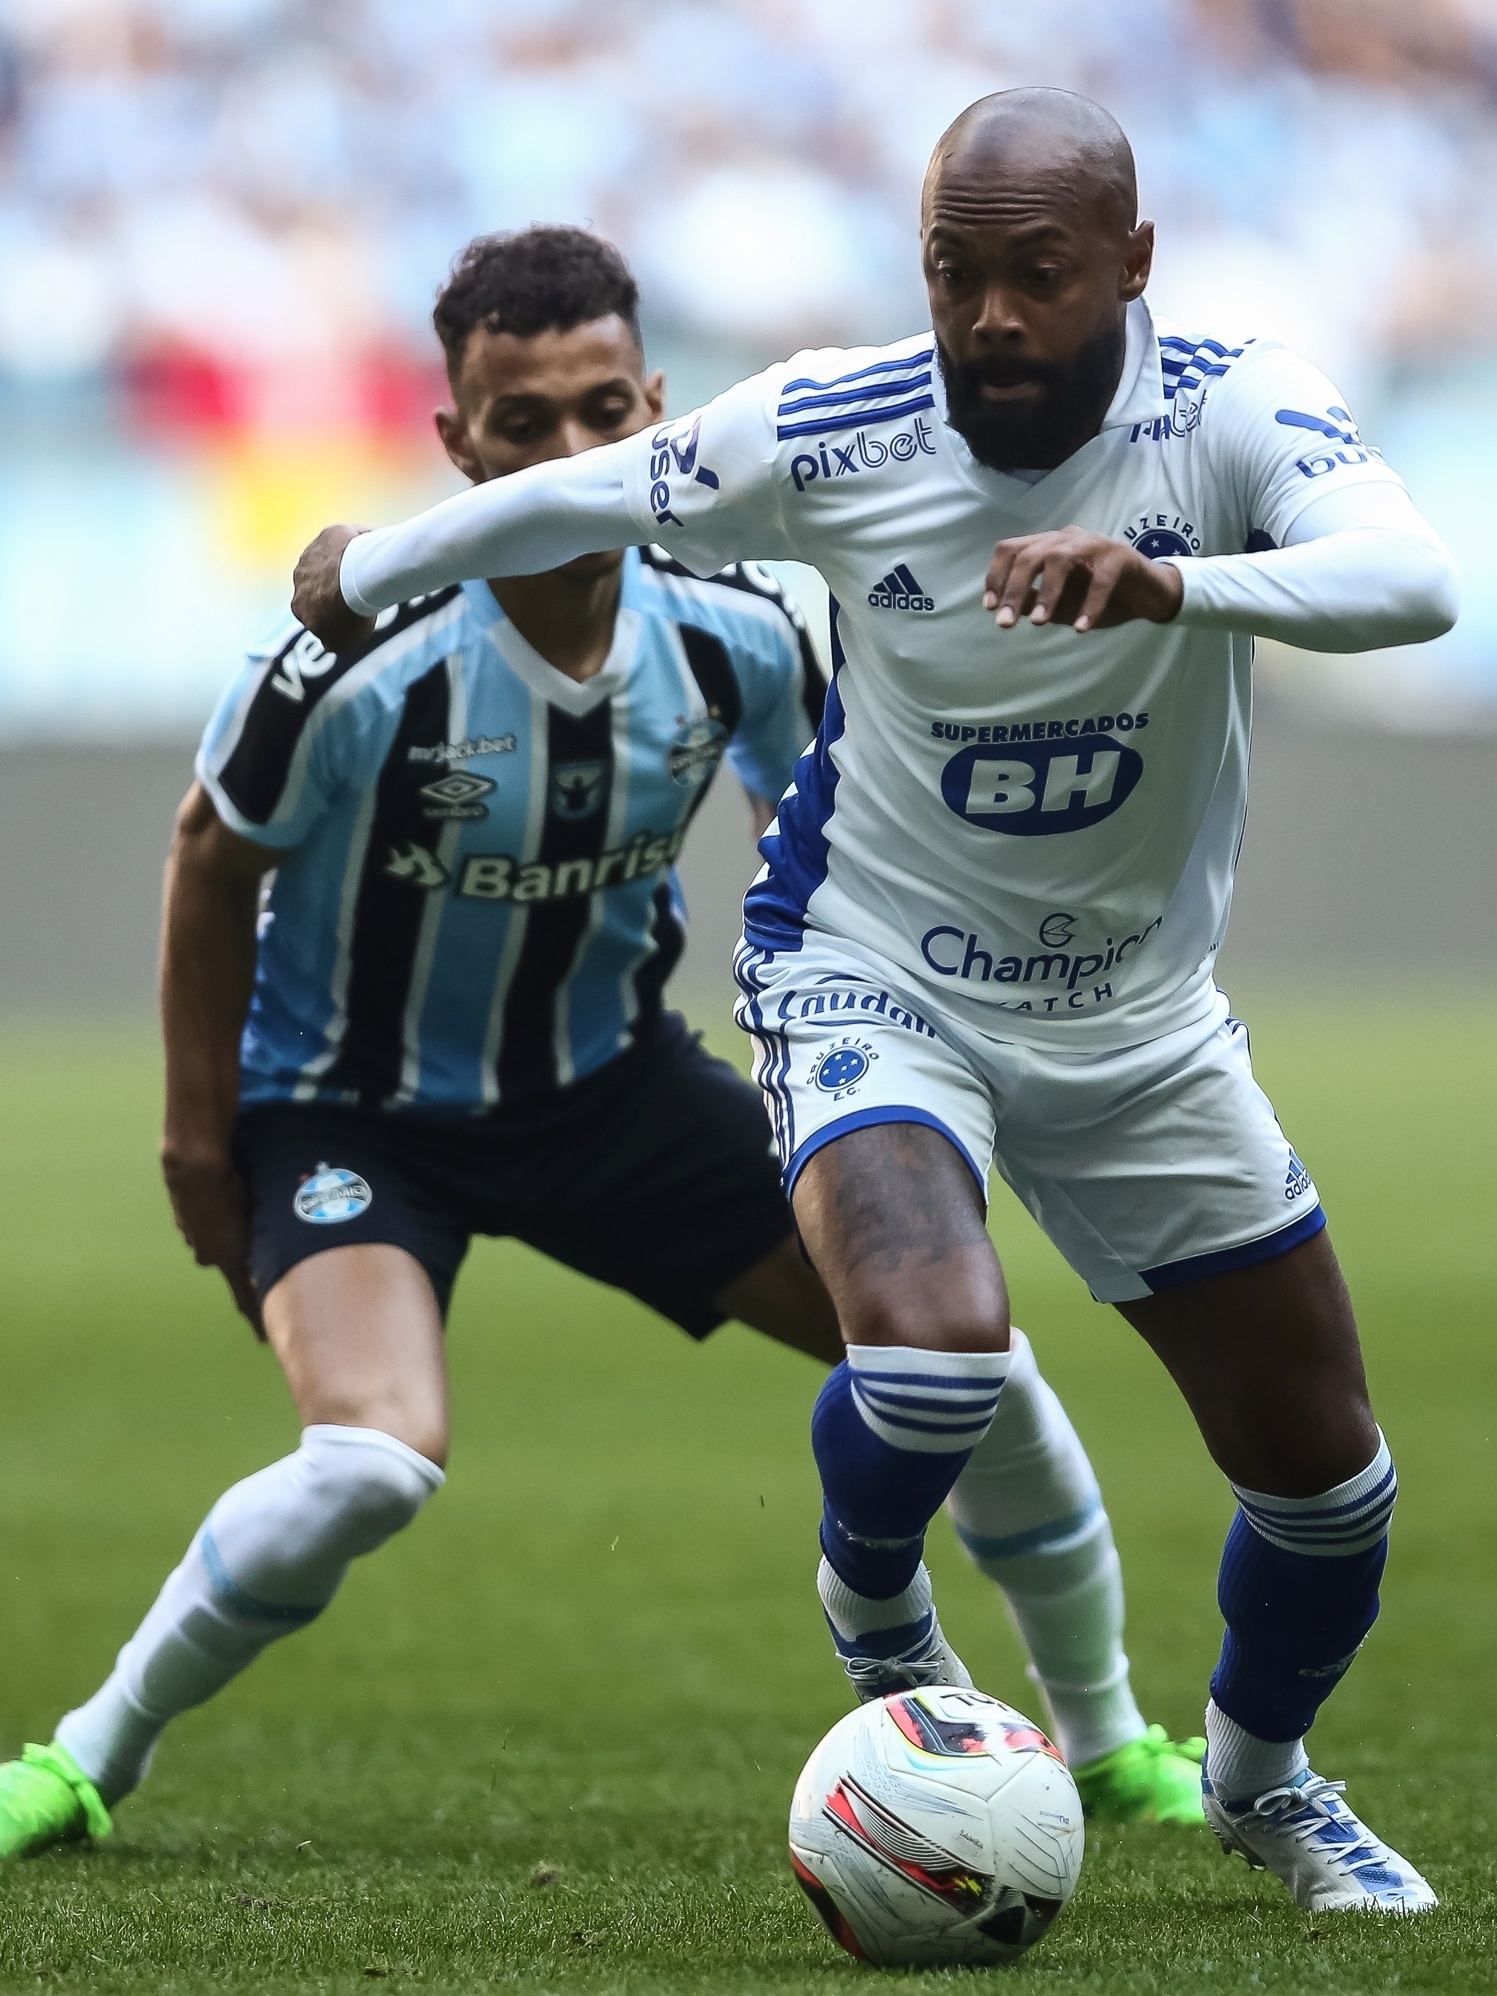 Em jogo movimentado, Cruzeiro supera o Grêmio e vence primeira no  Brasileirão - Gazeta Esportiva